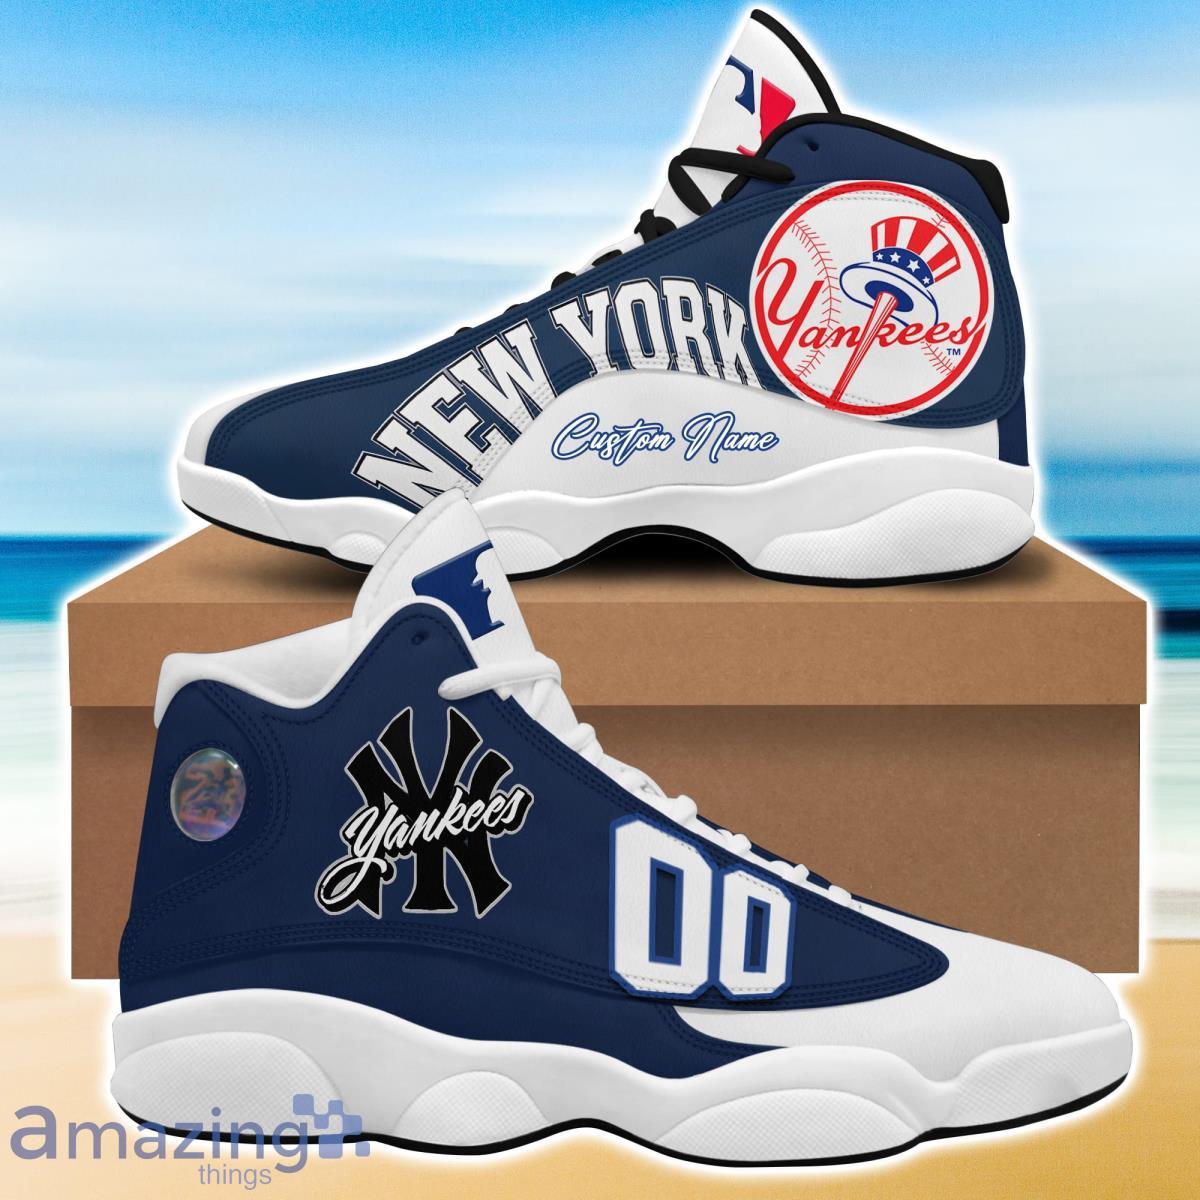 New York Yankees Air Jordan 13 Sneakers, MLB Yankees Shoes - Reallgraphics